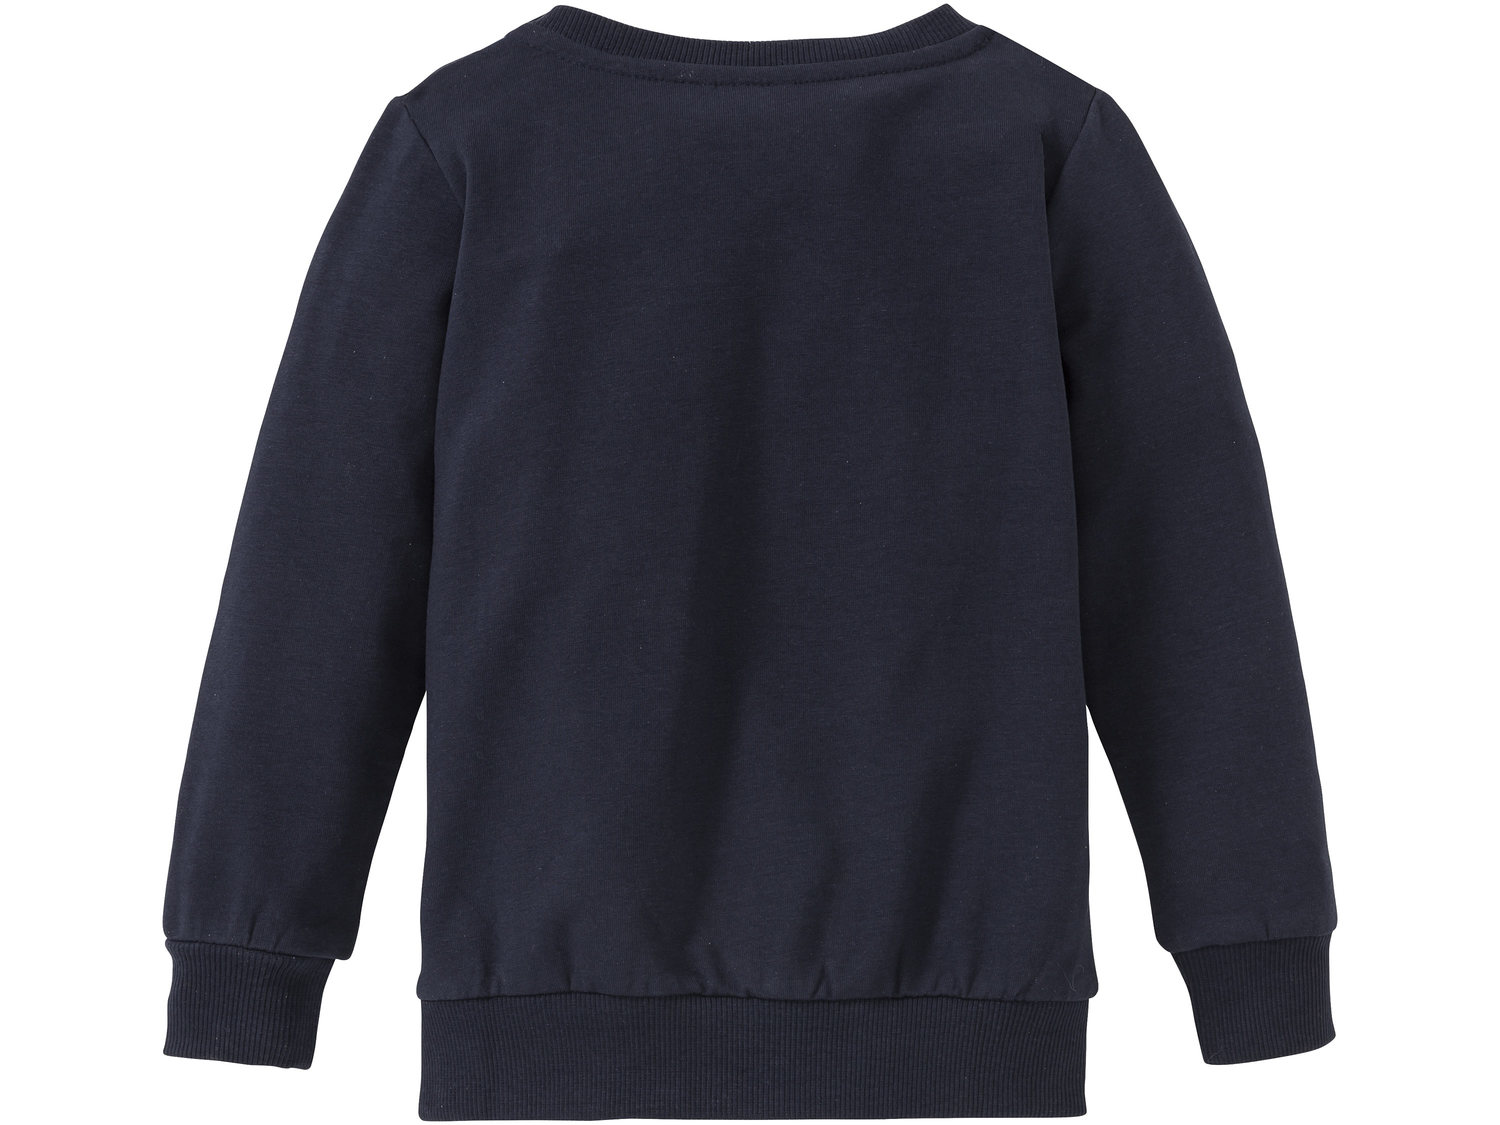 Bluza Lupilu, cena 19,99 PLN 
- wysoka zawartość bawełny
- rozmiary: 98-116
- ...